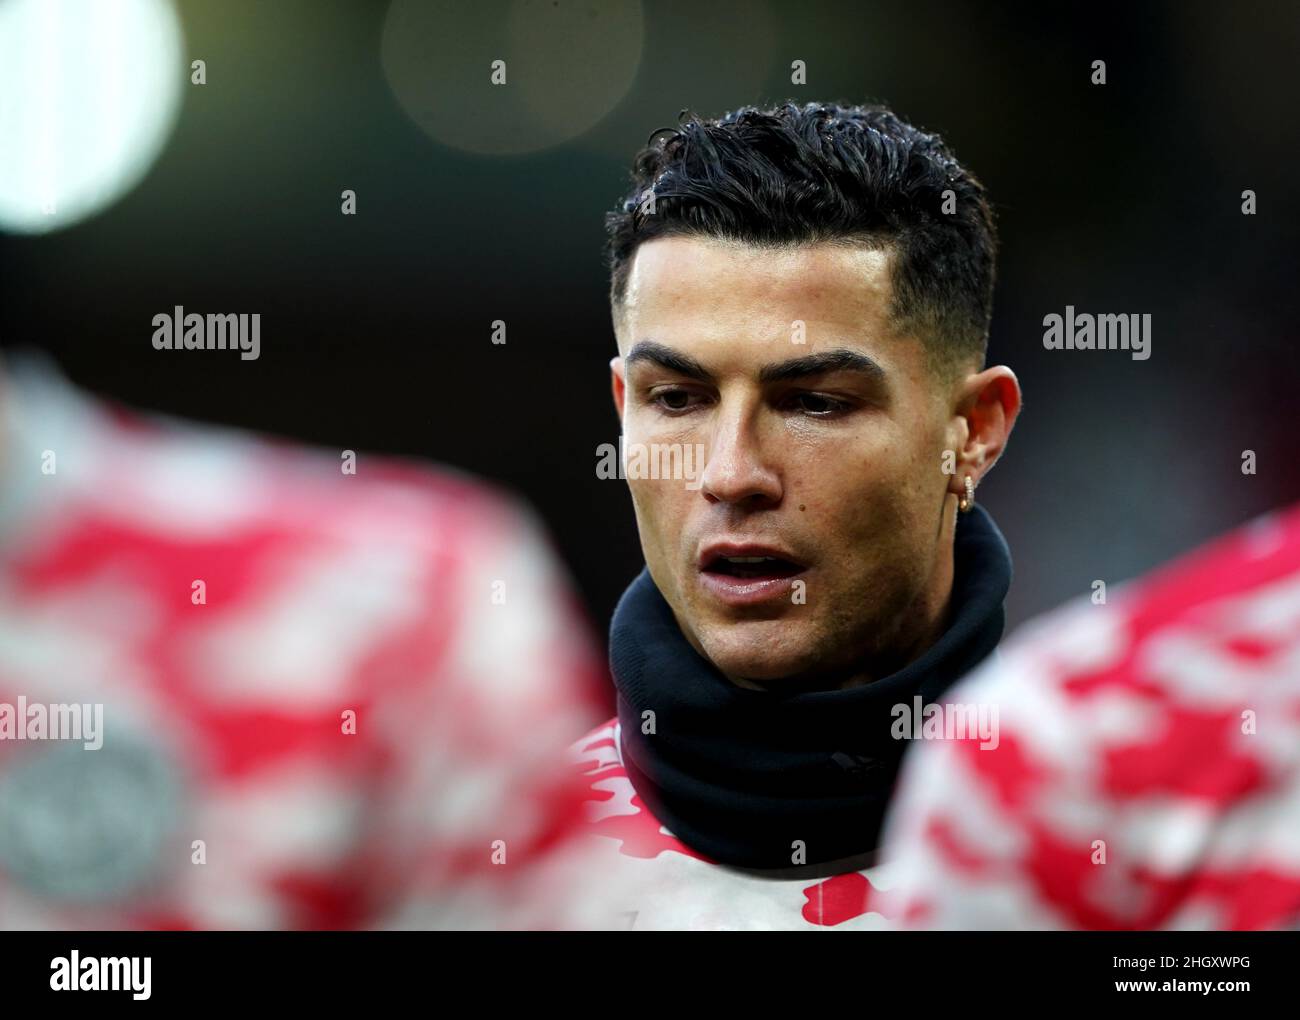 Cristiano Ronaldo del Manchester United durante el partido de la Premier League en Old Trafford, Manchester. Fecha de la foto: Sábado 22 de enero de 2022. Foto de stock